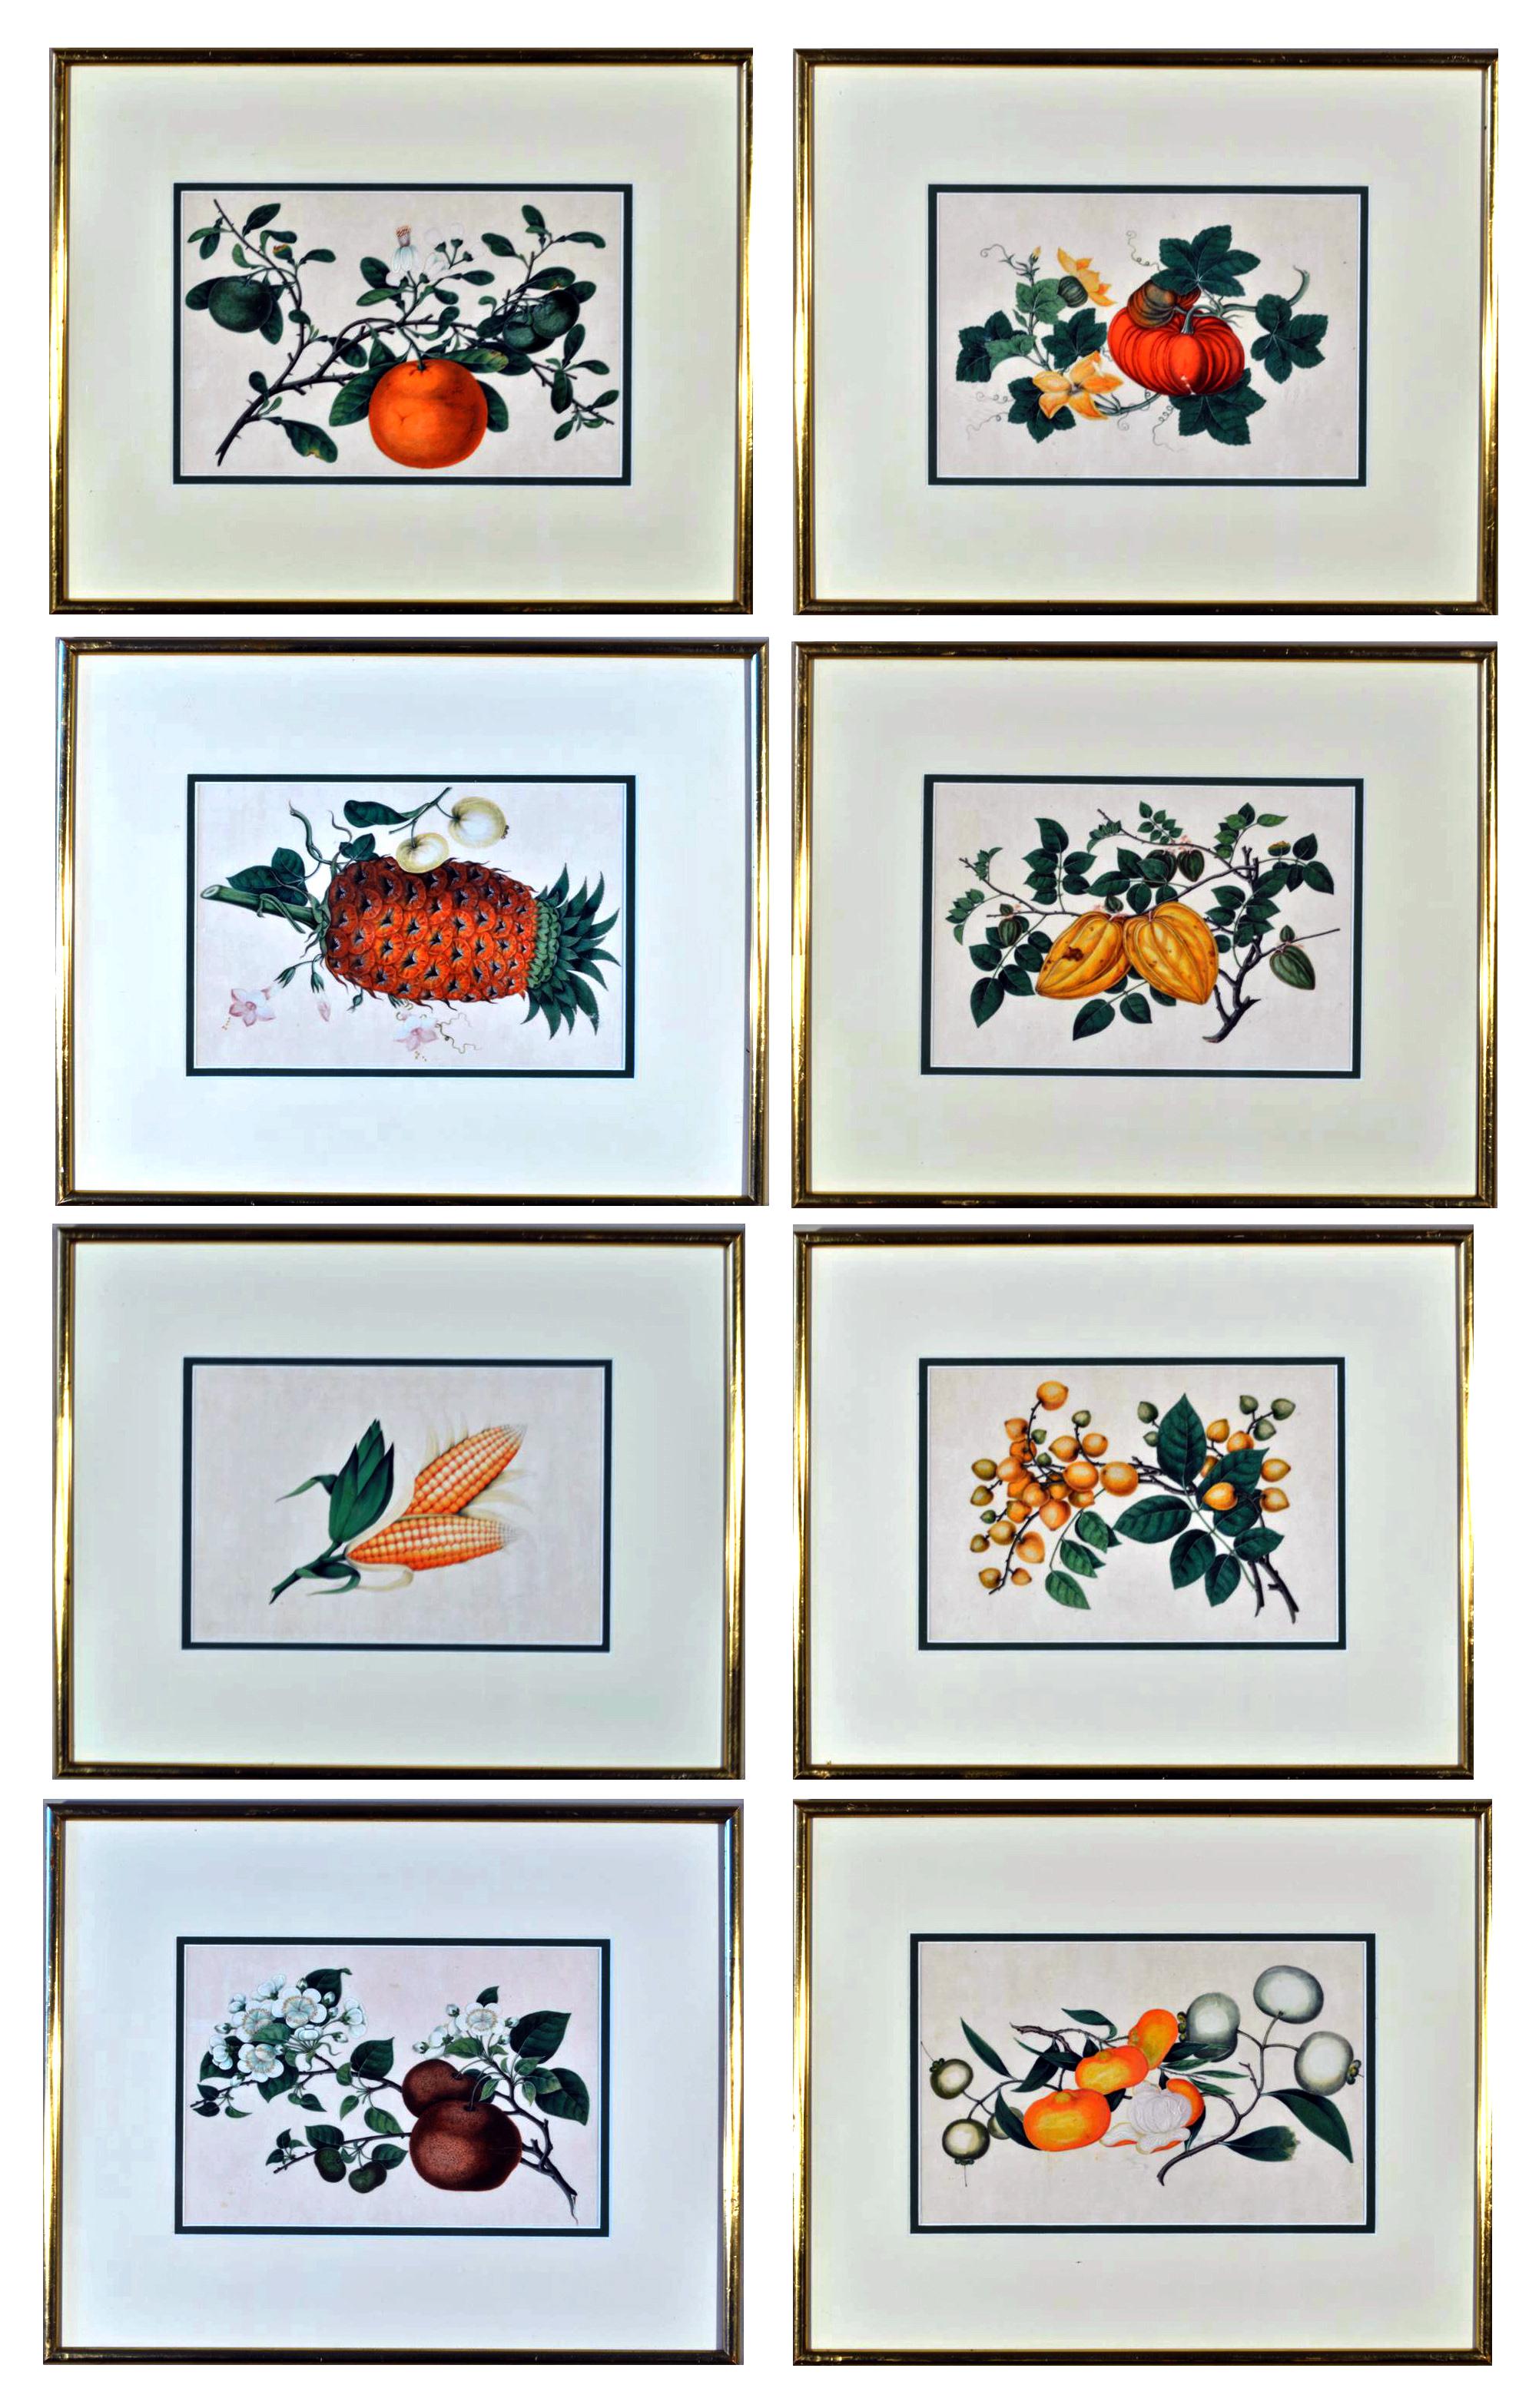 Chinesische Aquarelle von exotischen Früchten auf Markpapier aus dem Chinahandel,
Vergoldete Rahmen,
Mitte des 19. Jahrhunderts

Die acht chinesischen Aquarelle auf Markpapier sind von hoher Qualität und zeigen verschiedene exotische Früchte wie